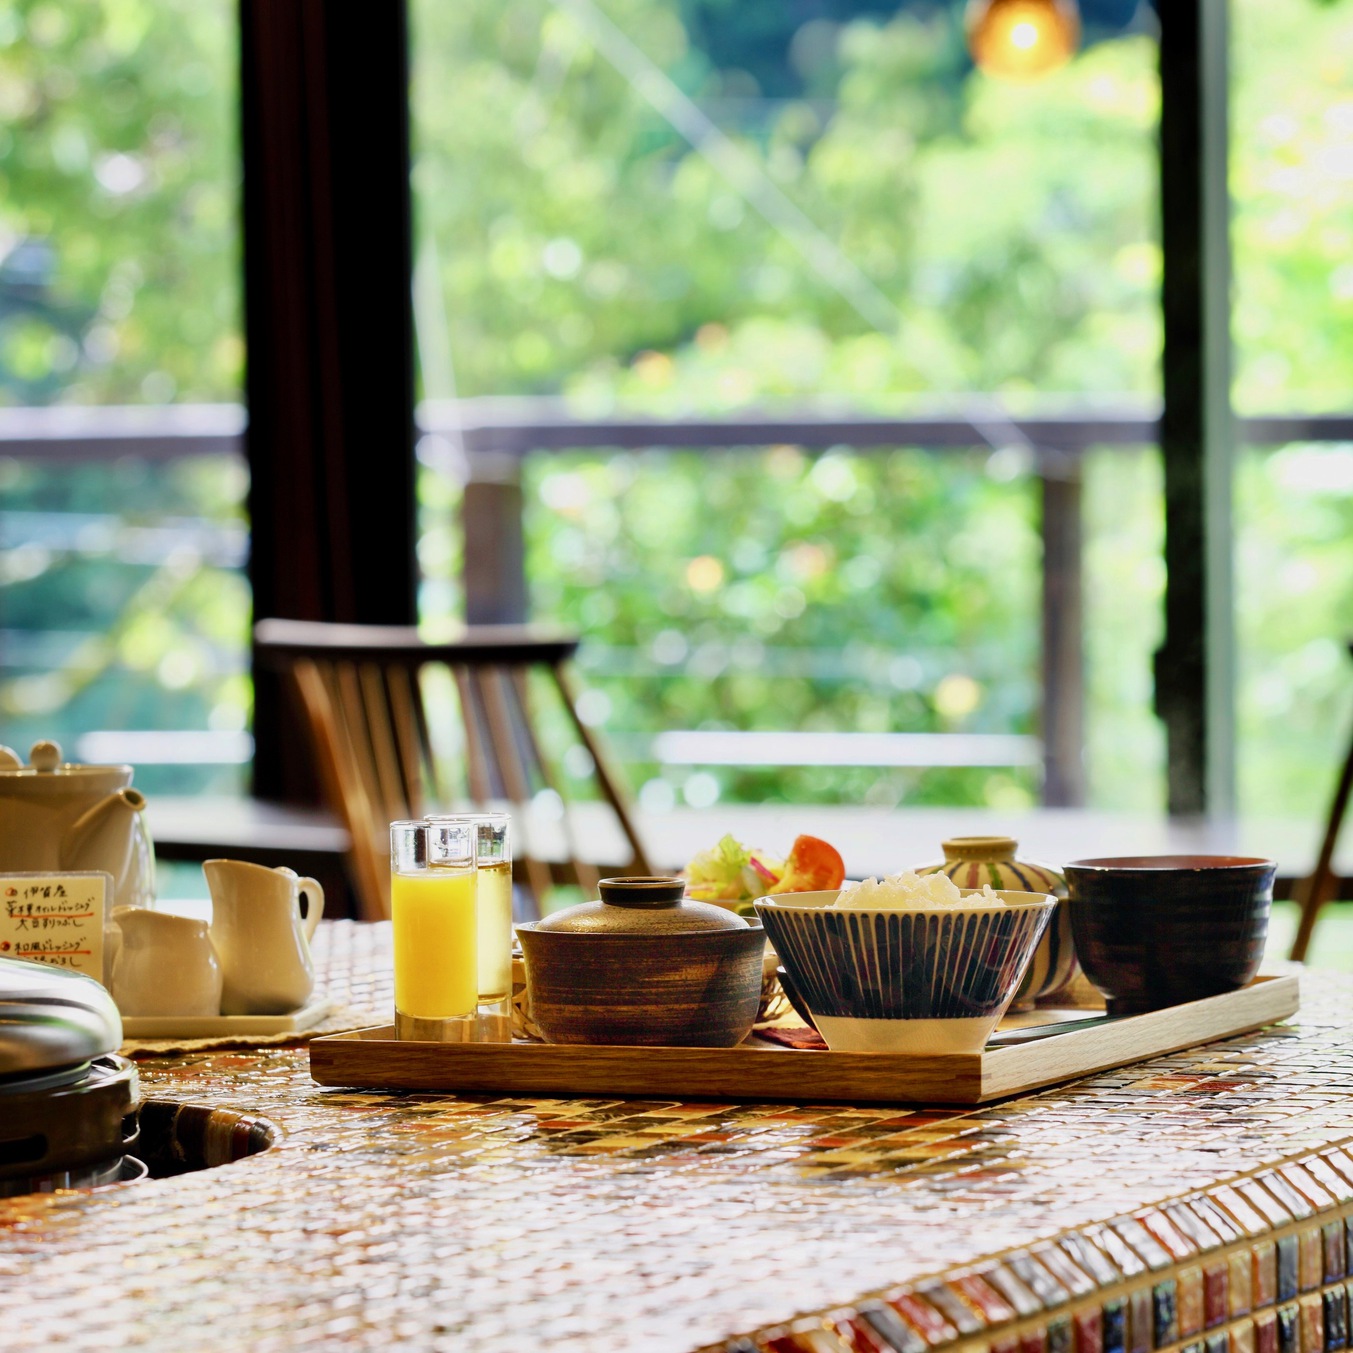 伊賀米コシヒカリをおいしく食べるがコンセプト伊賀のおいしい朝ごはん。おかわり制で提供します